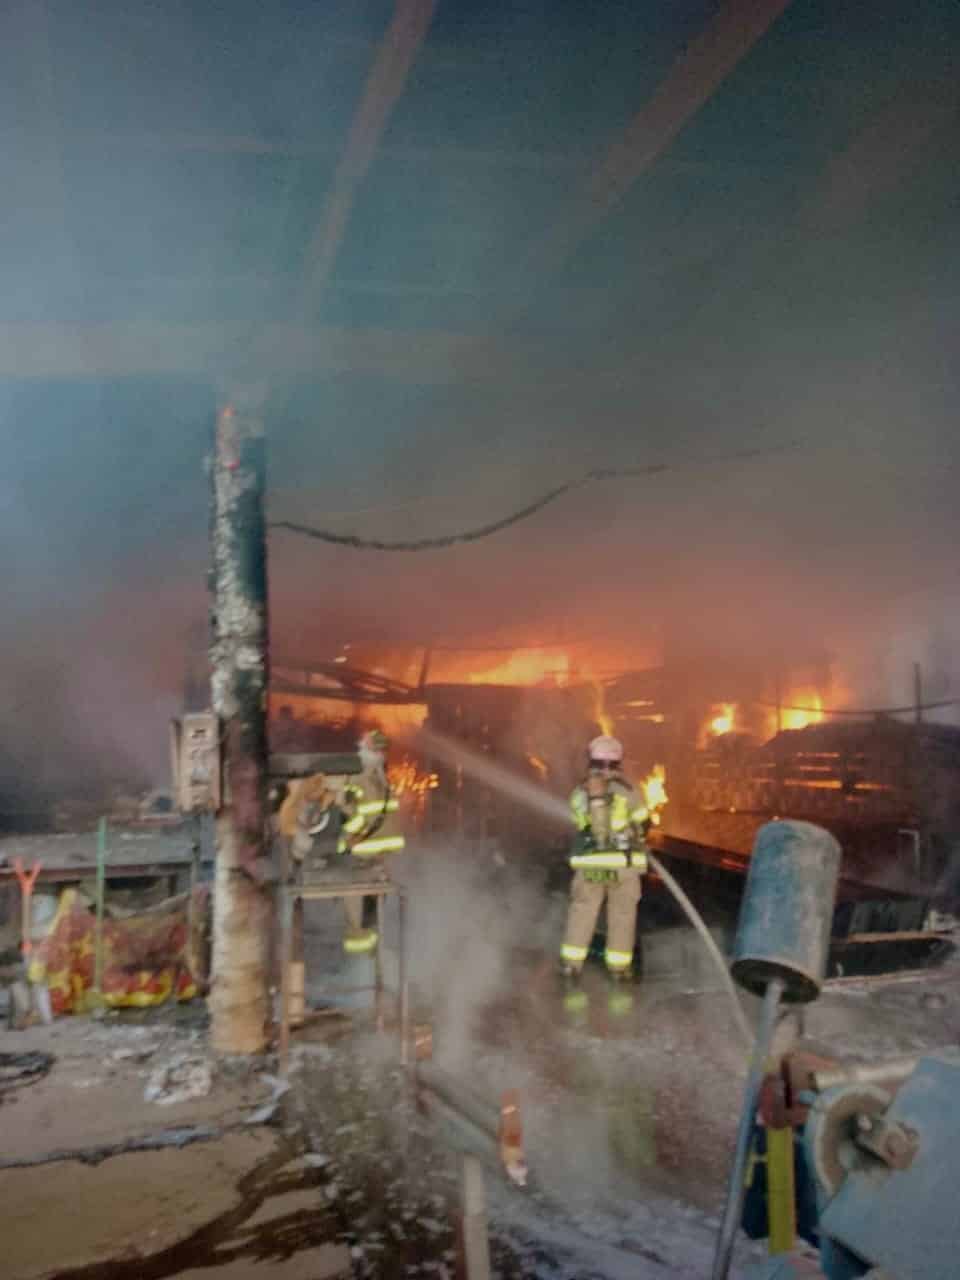 Un taller se incendió ayer en la Colonia Estrella sin que se reportaran lesionados, únicamente daños materiales y la movilización de rescatistas